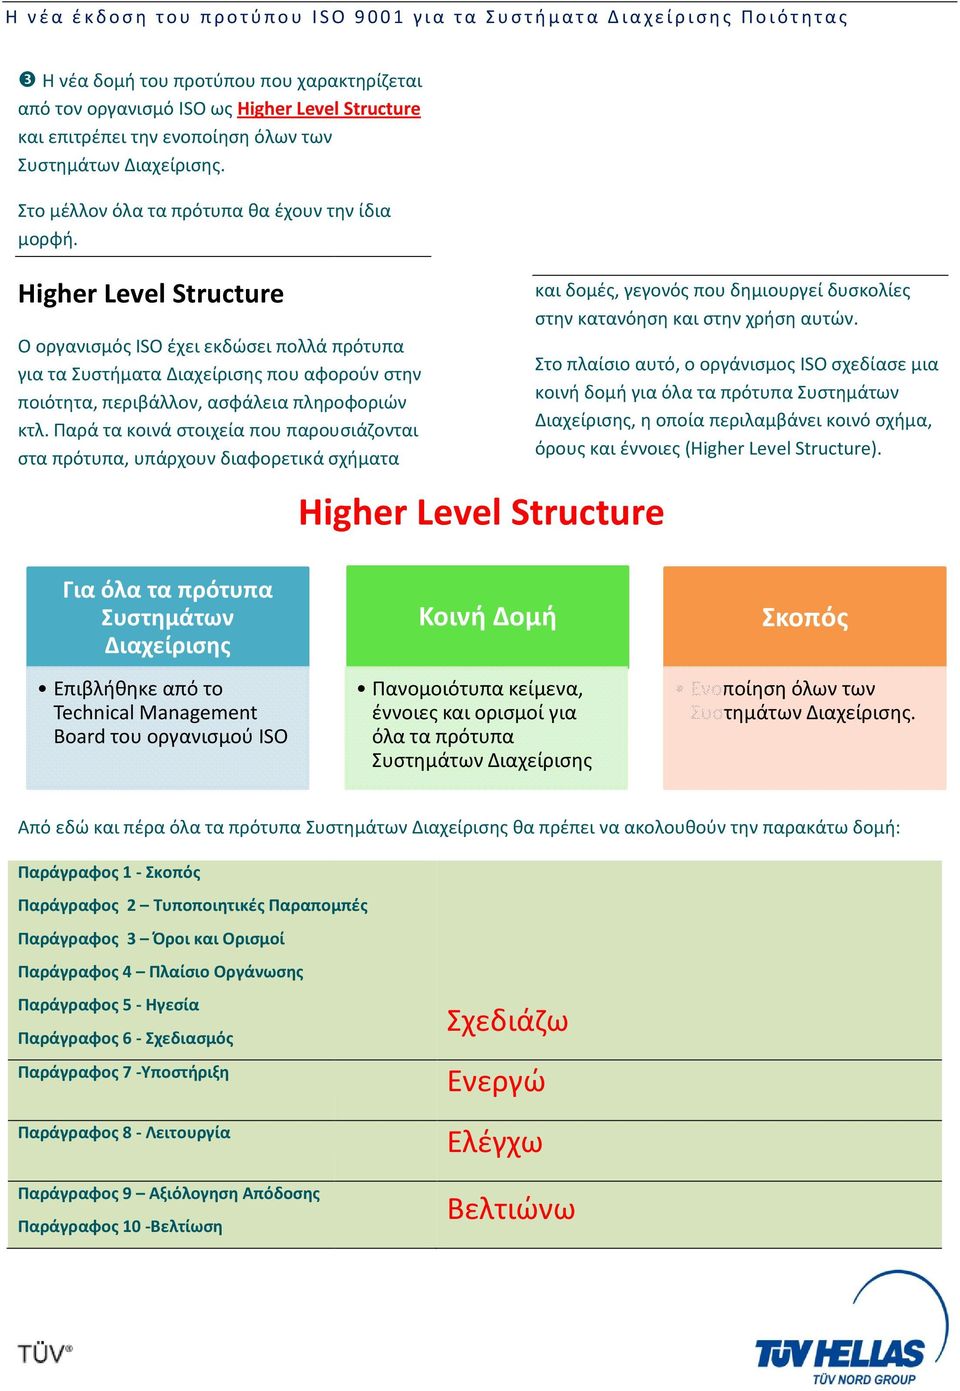 Higher Level Structure Ο οργανισμός ISO έχει εκδώσει πολλά πρότυπα για τα Συστήματα Διαχείρισης που αφορούν στην ποιότητα, περιβάλλον, ασφάλεια πληροφοριών κτλ.